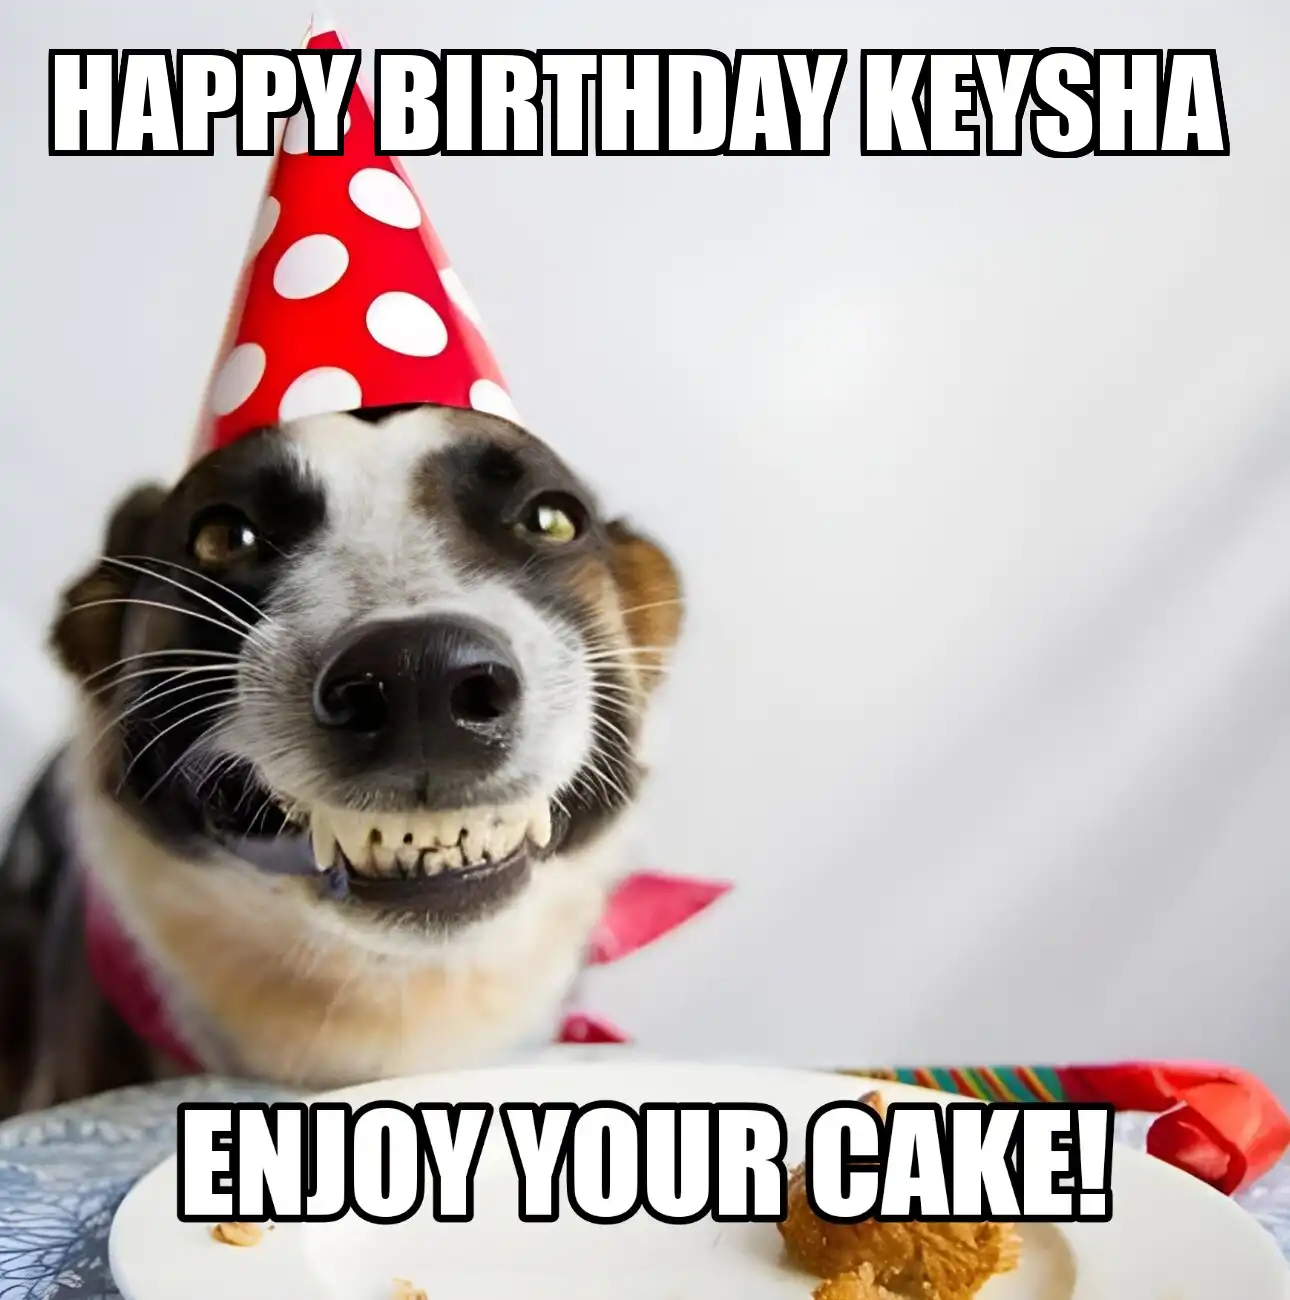 Happy Birthday Keysha Enjoy Your Cake Dog Meme